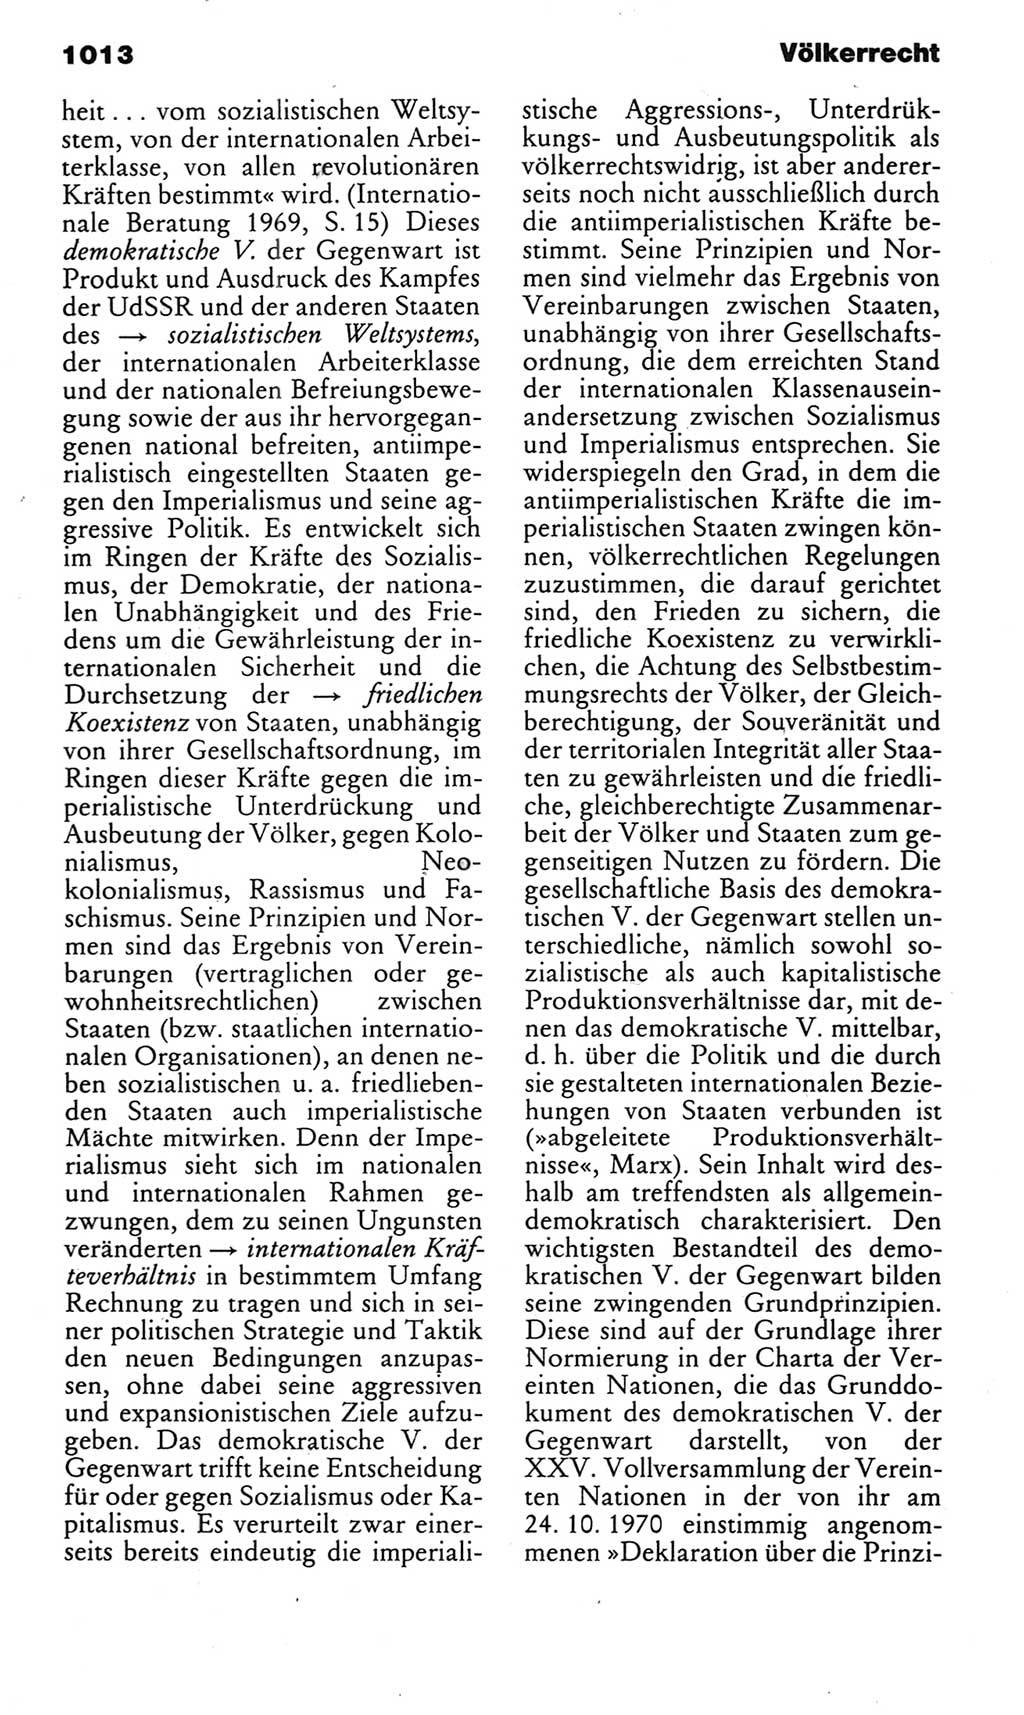 Kleines politisches Wörterbuch [Deutsche Demokratische Republik (DDR)] 1983, Seite 1013 (Kl. pol. Wb. DDR 1983, S. 1013)